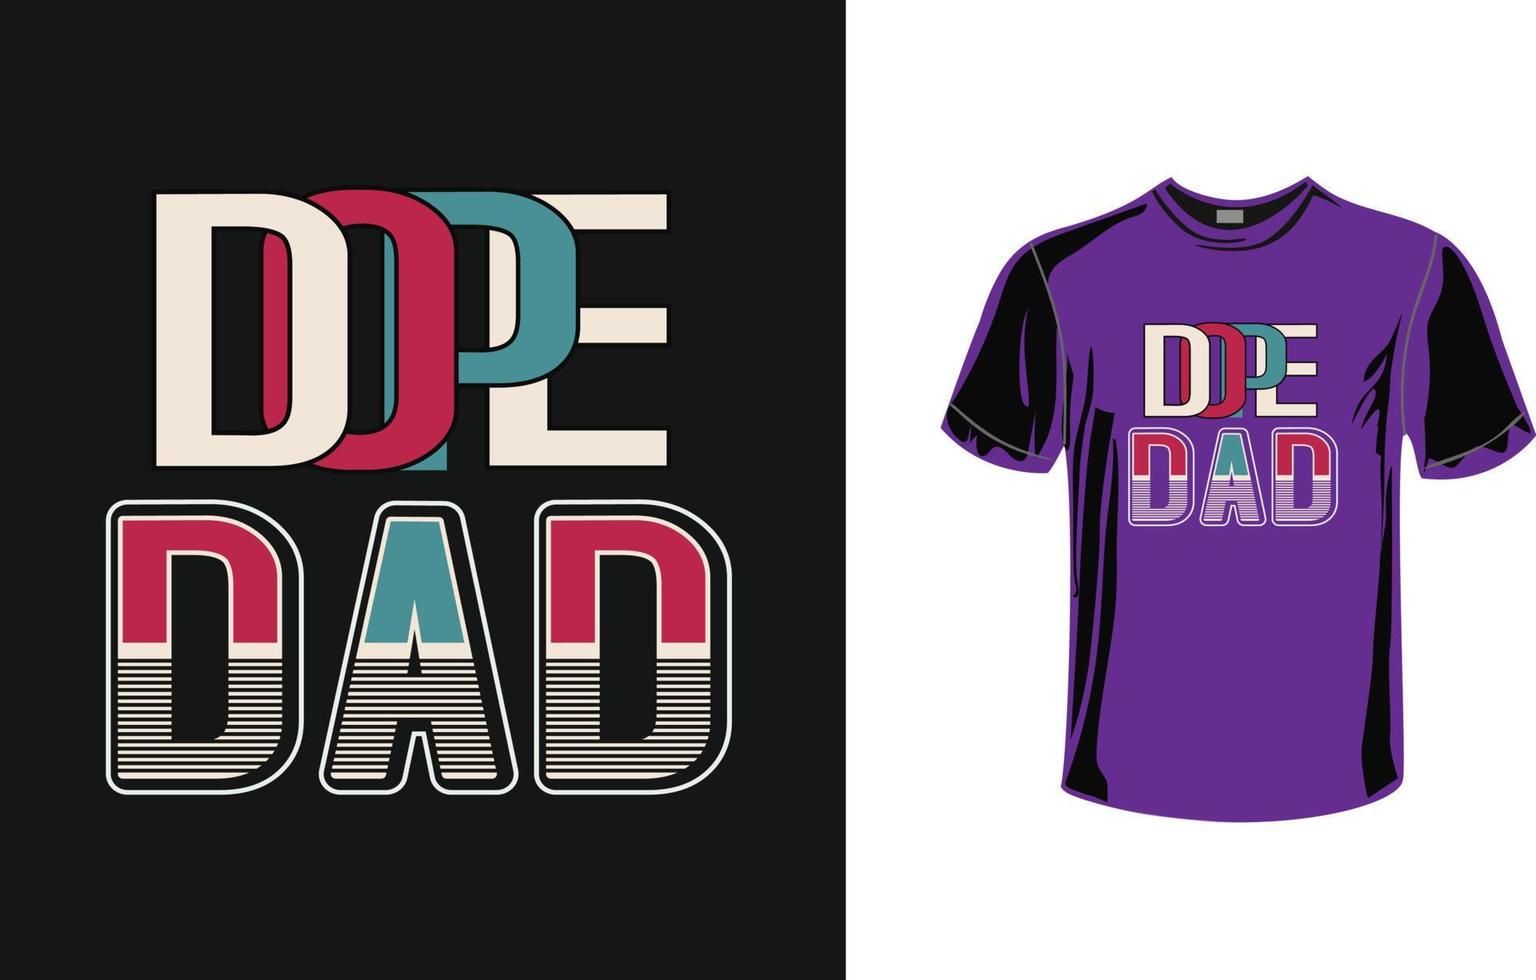 Dope dad tshirt design free vector